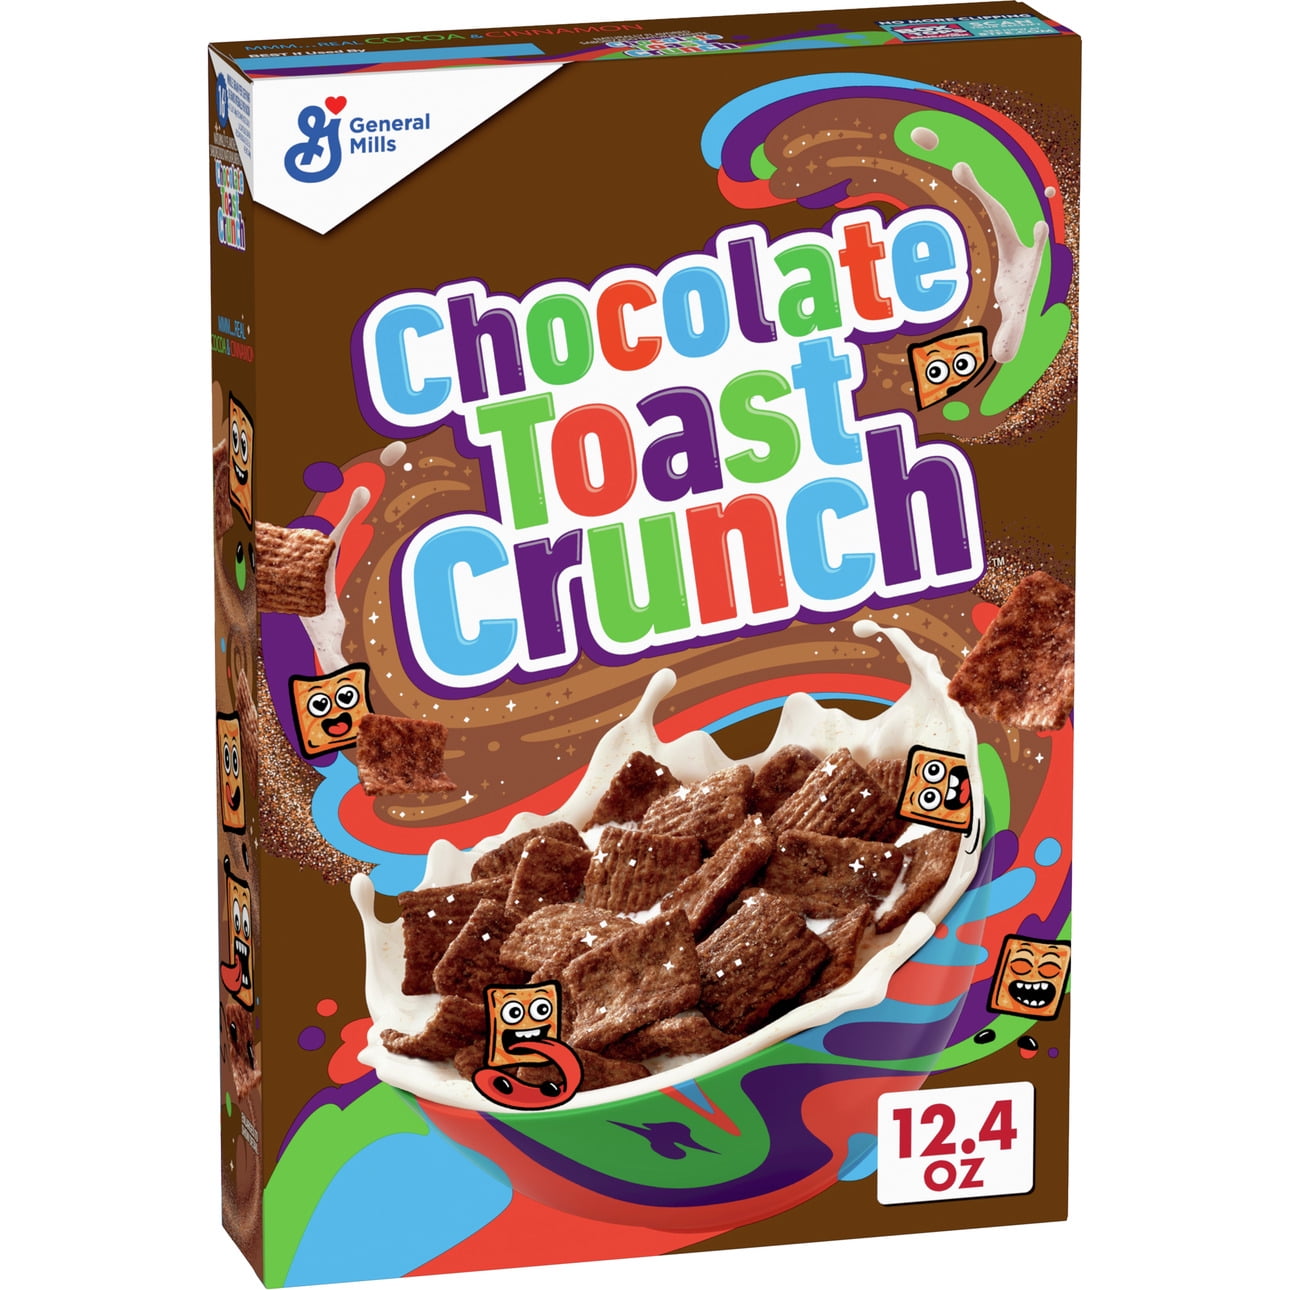 14954円 特価 Kashi Golean Crunch Cereal 13.8 Ounce 12 per case. Ounces Case of